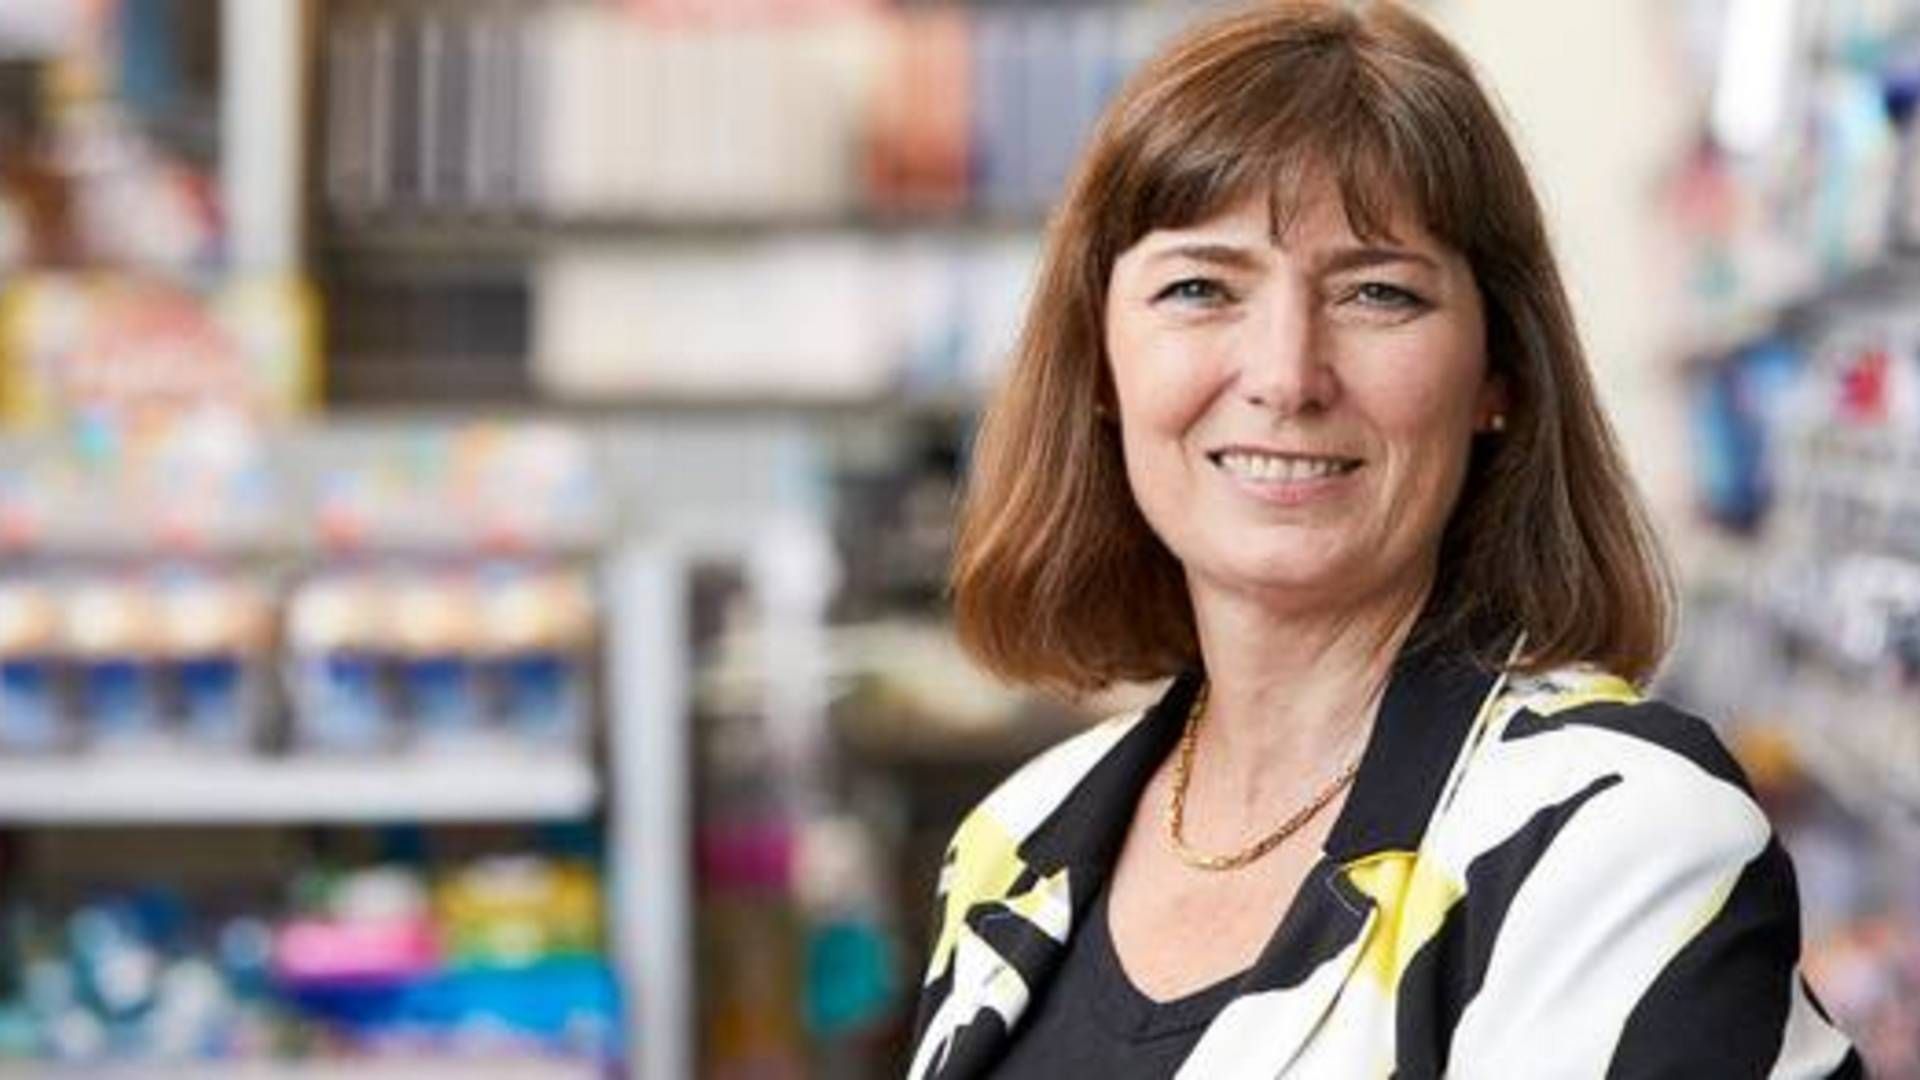 Adm. direktør for Indeks Retail, der bl.a. står bag Bog & Idé, Marianne Lyngby Pedersen kan nu slås op i Kraks Blå Bog. | Foto: PR/Indeks Retail